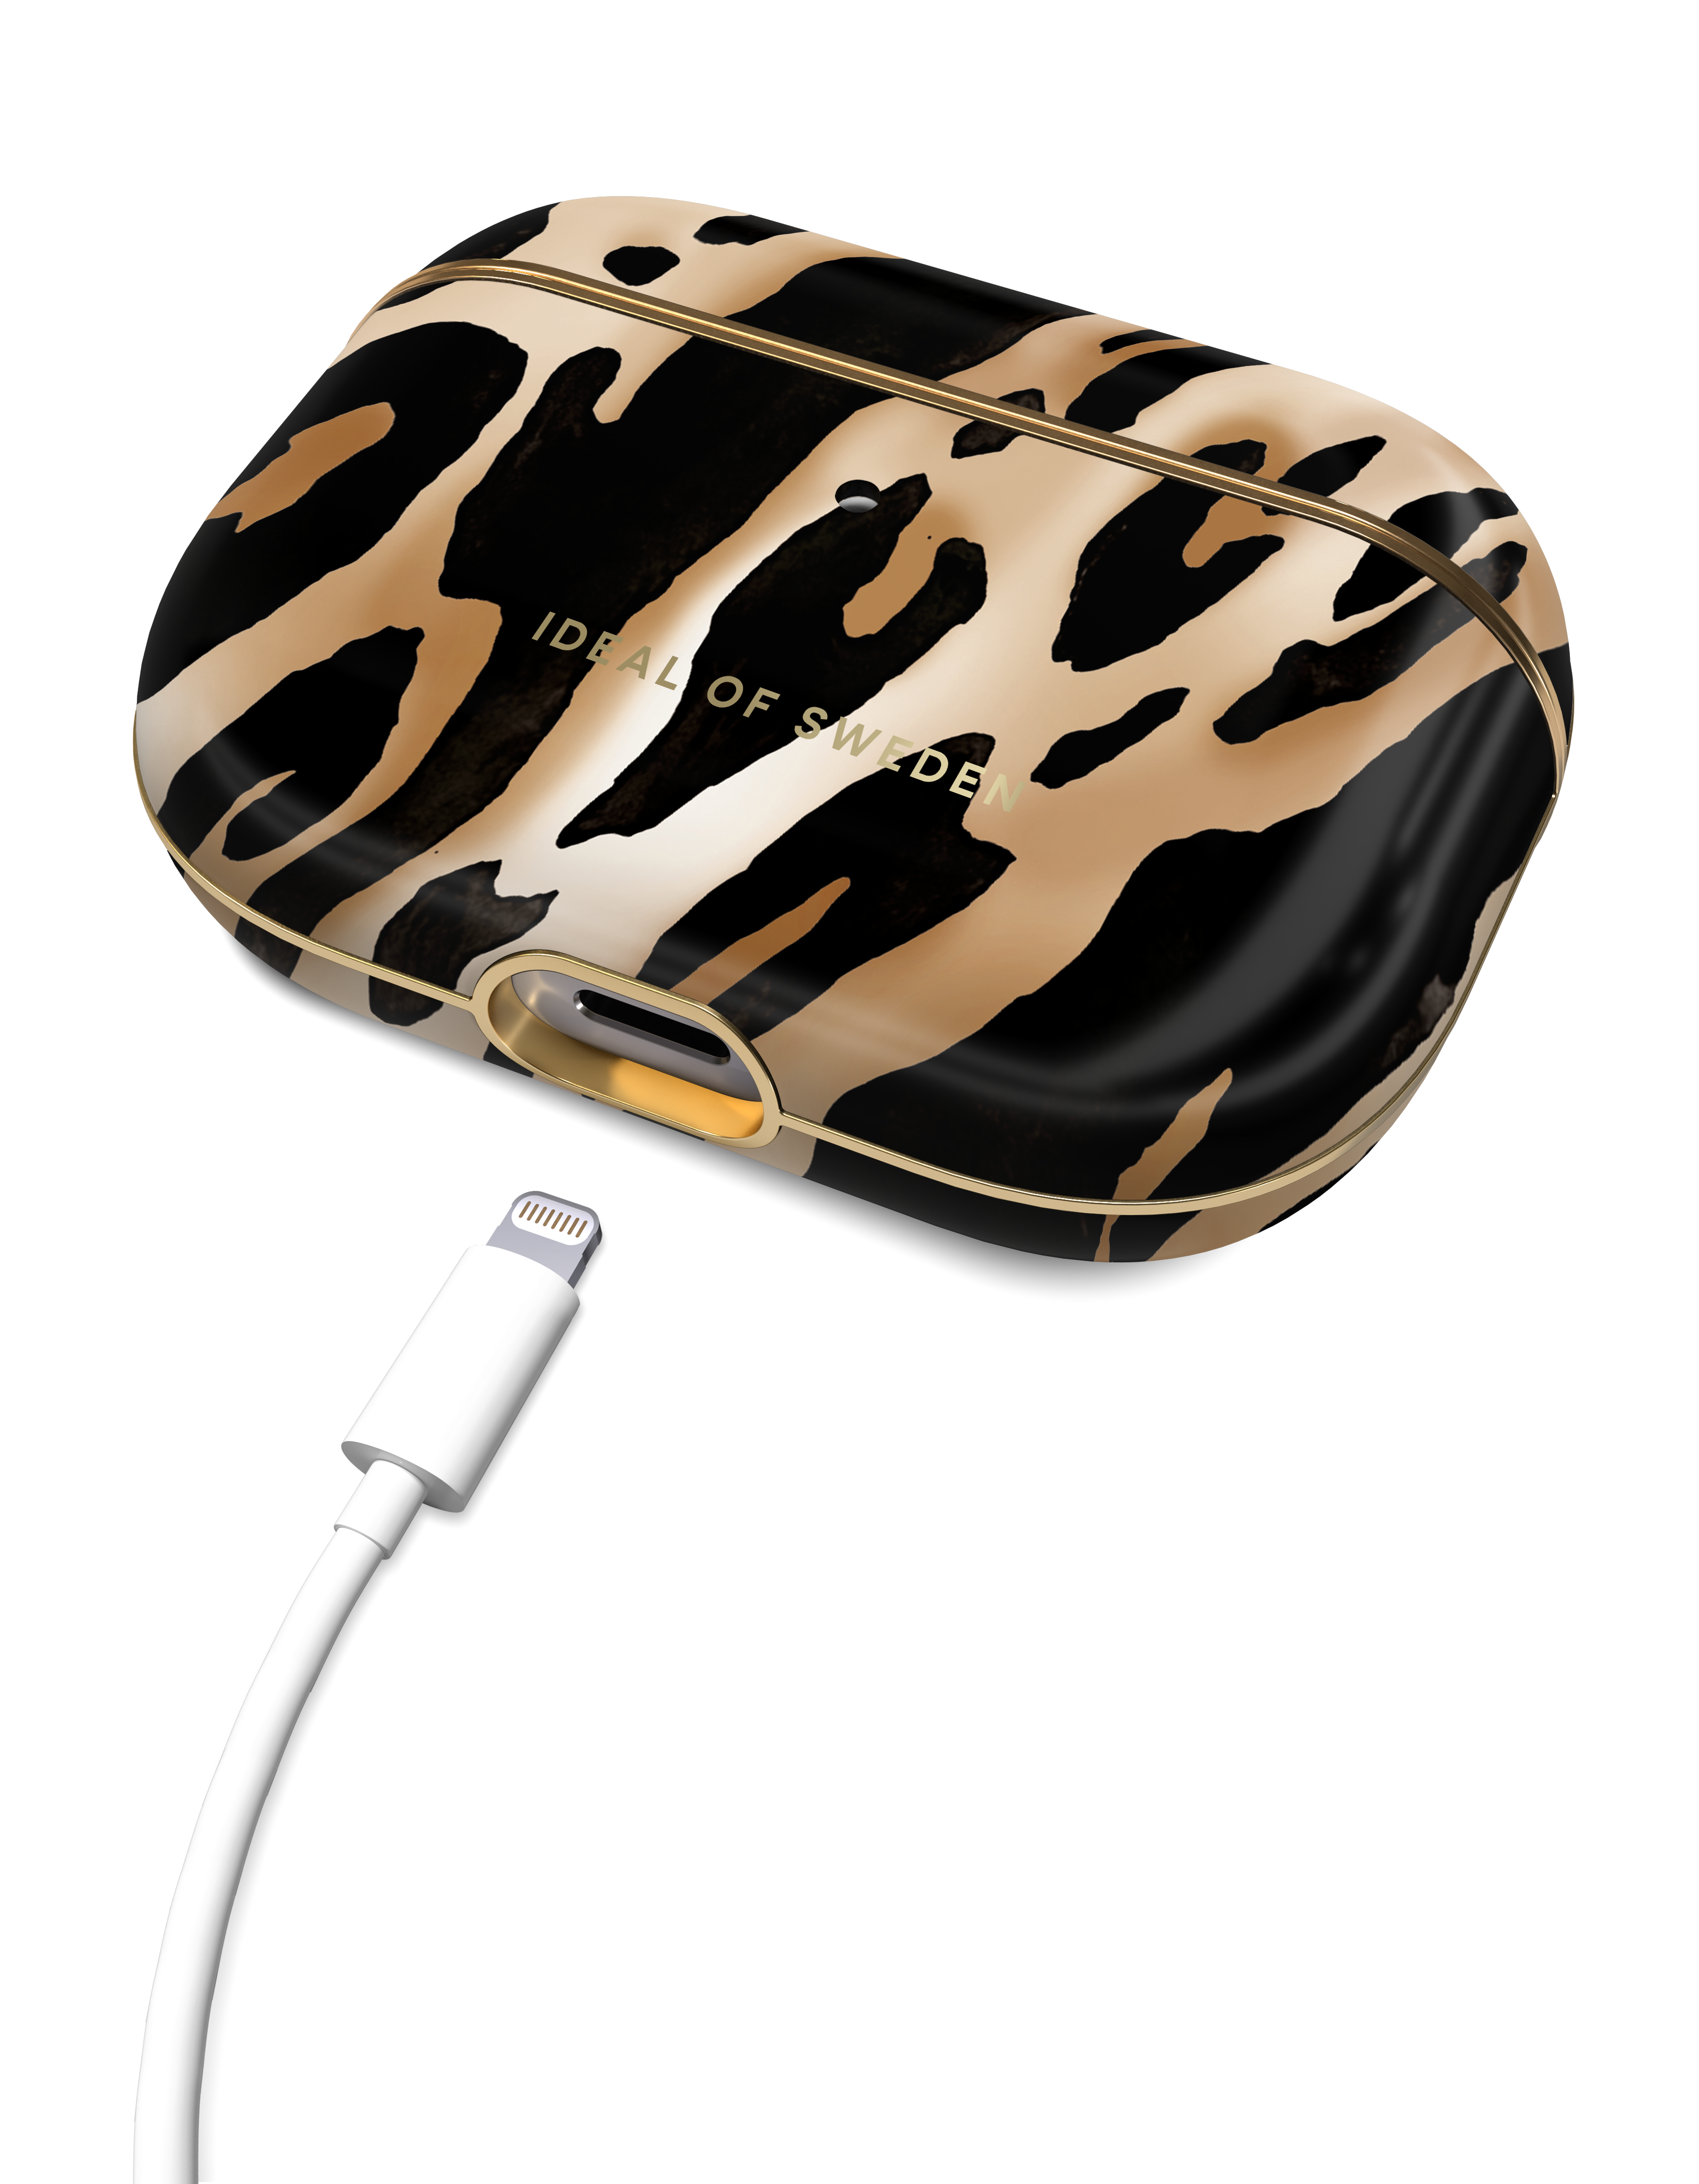 Leopard Iconic Apple für: SWEDEN OF Schutzhülle IDFAPCAW21-G4-356 IDEAL passend